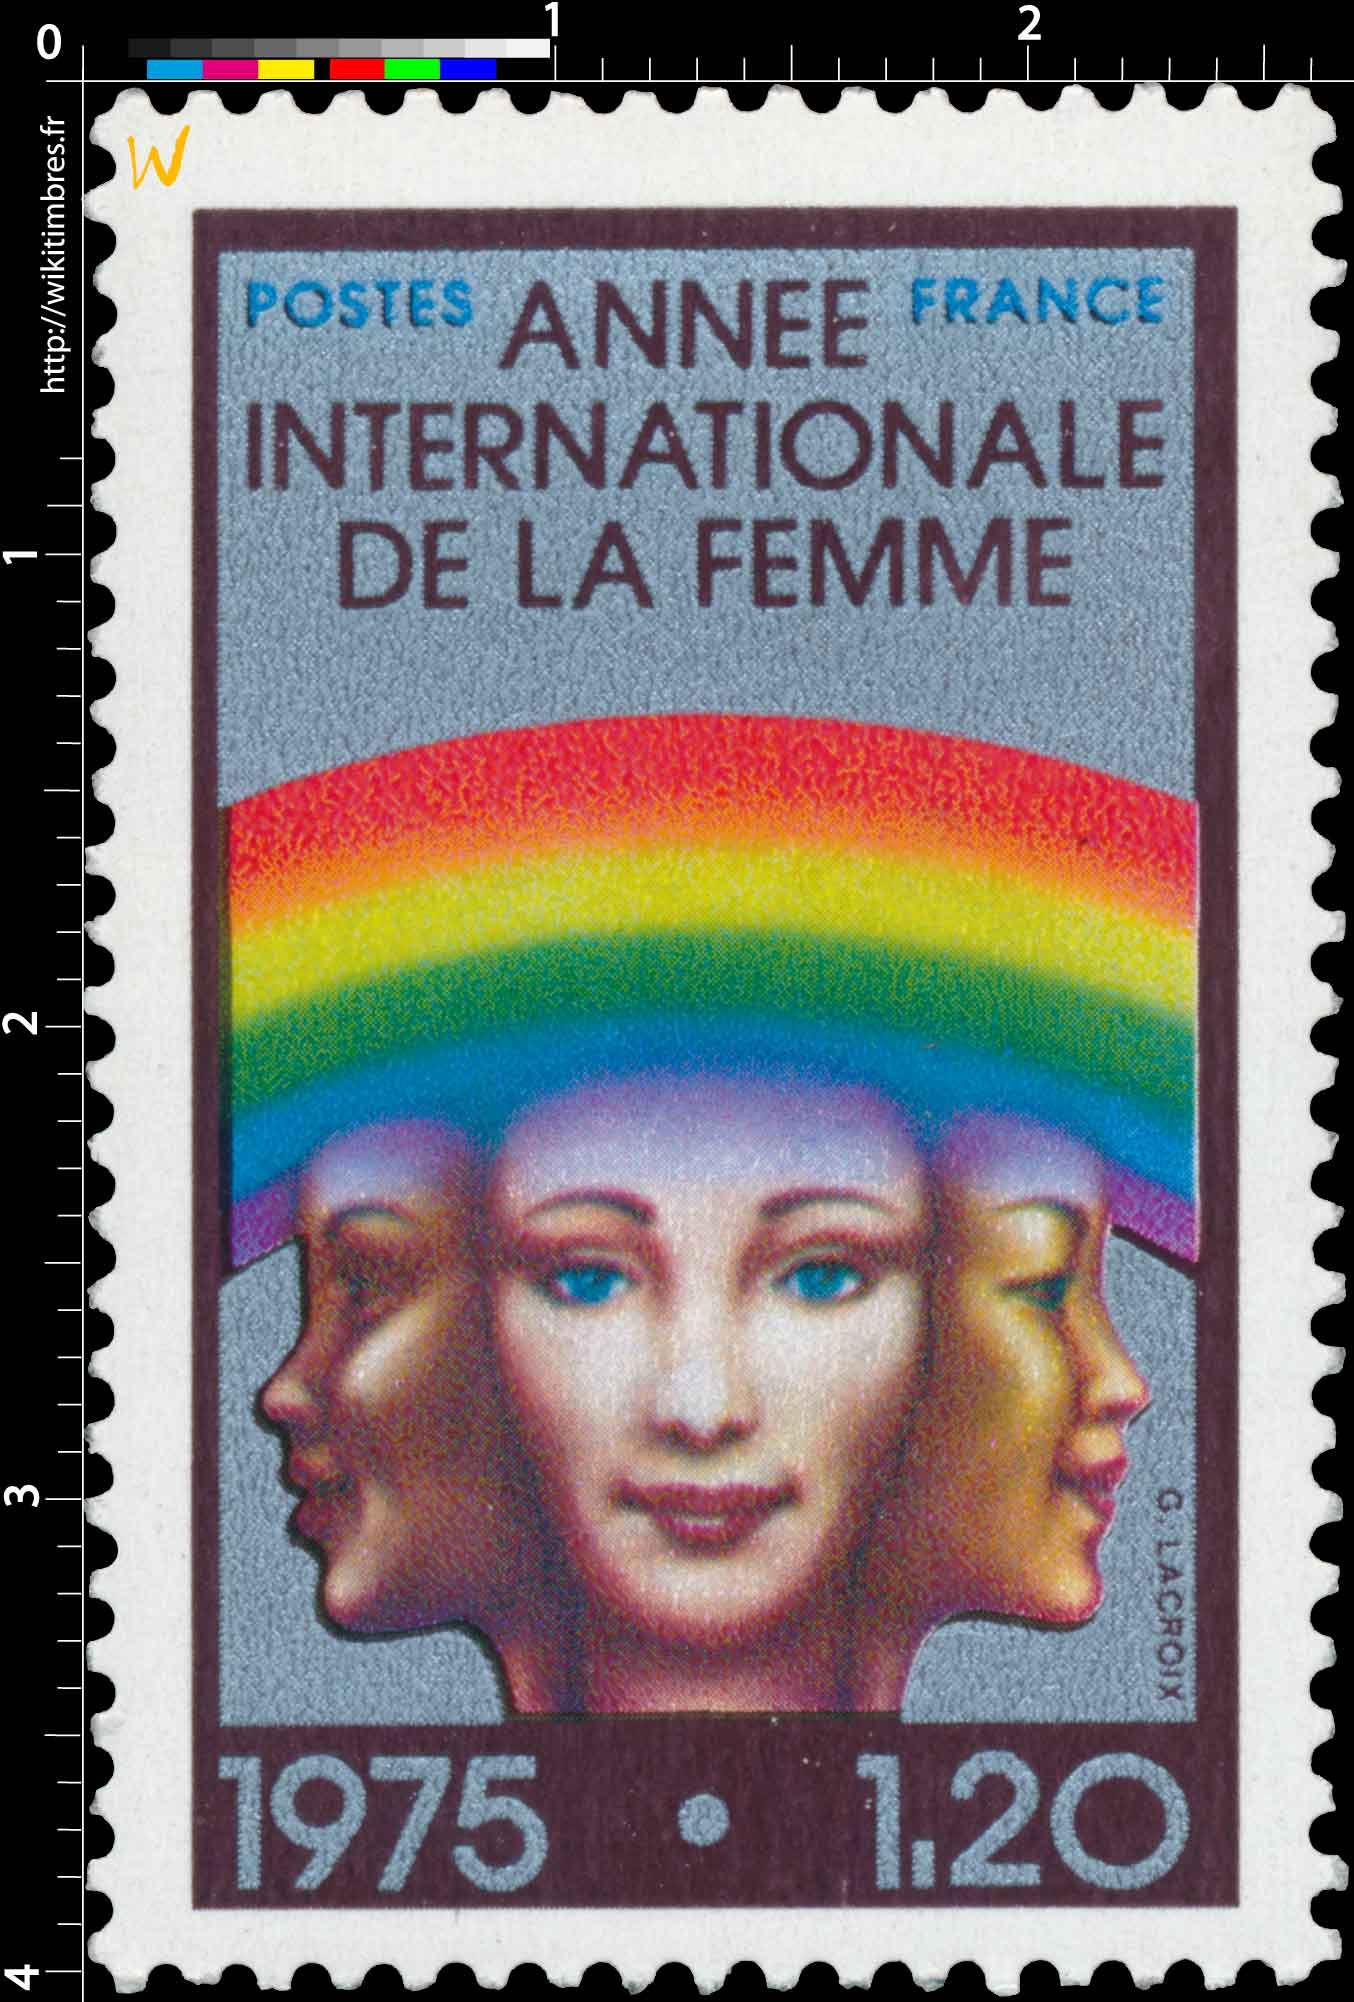 1975 ANNÉE INTERNATIONALE DE LA FEMME